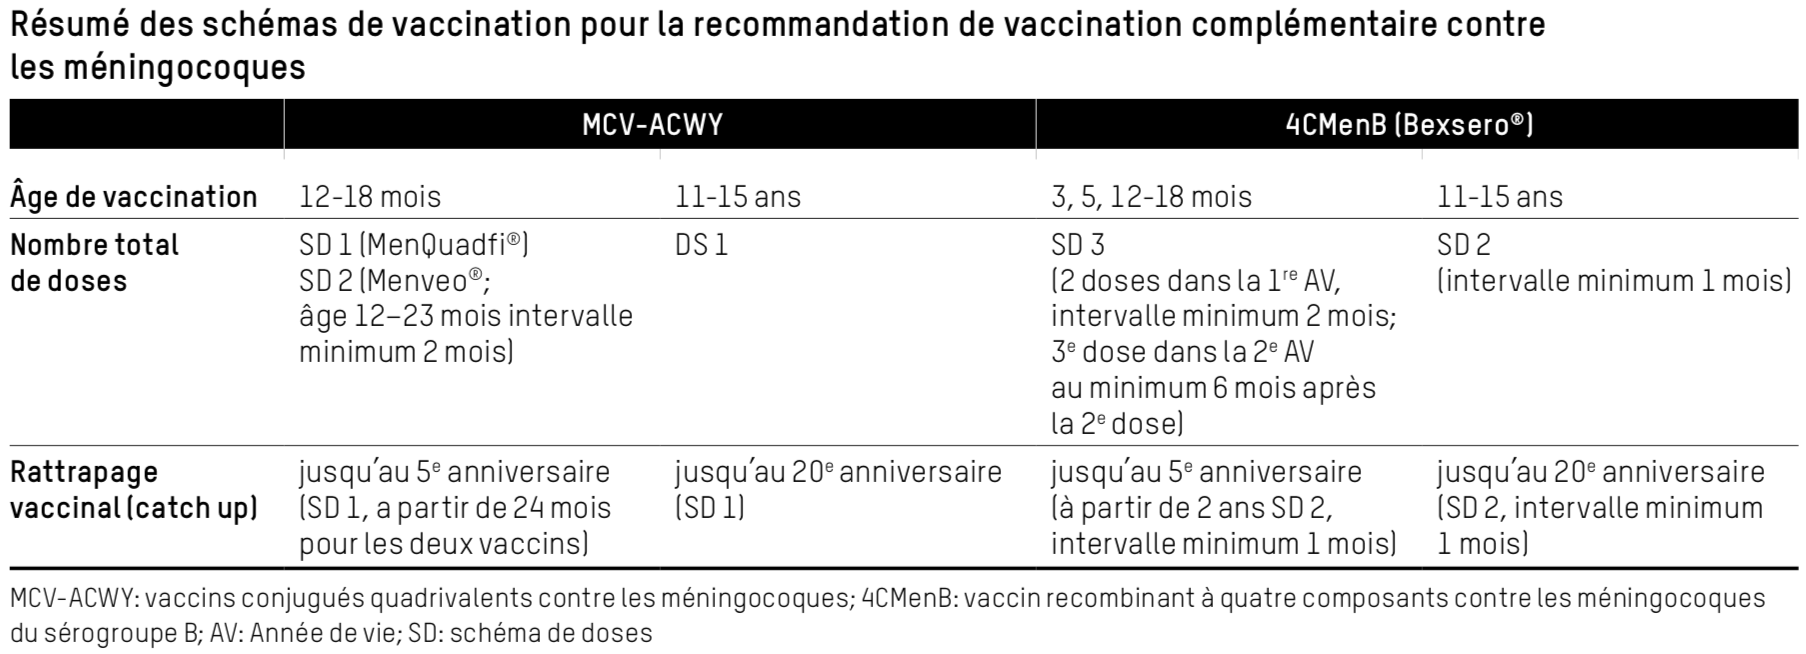 schémas de vaccination pour la recommandation de vaccination complémentaire contre les méningocoques